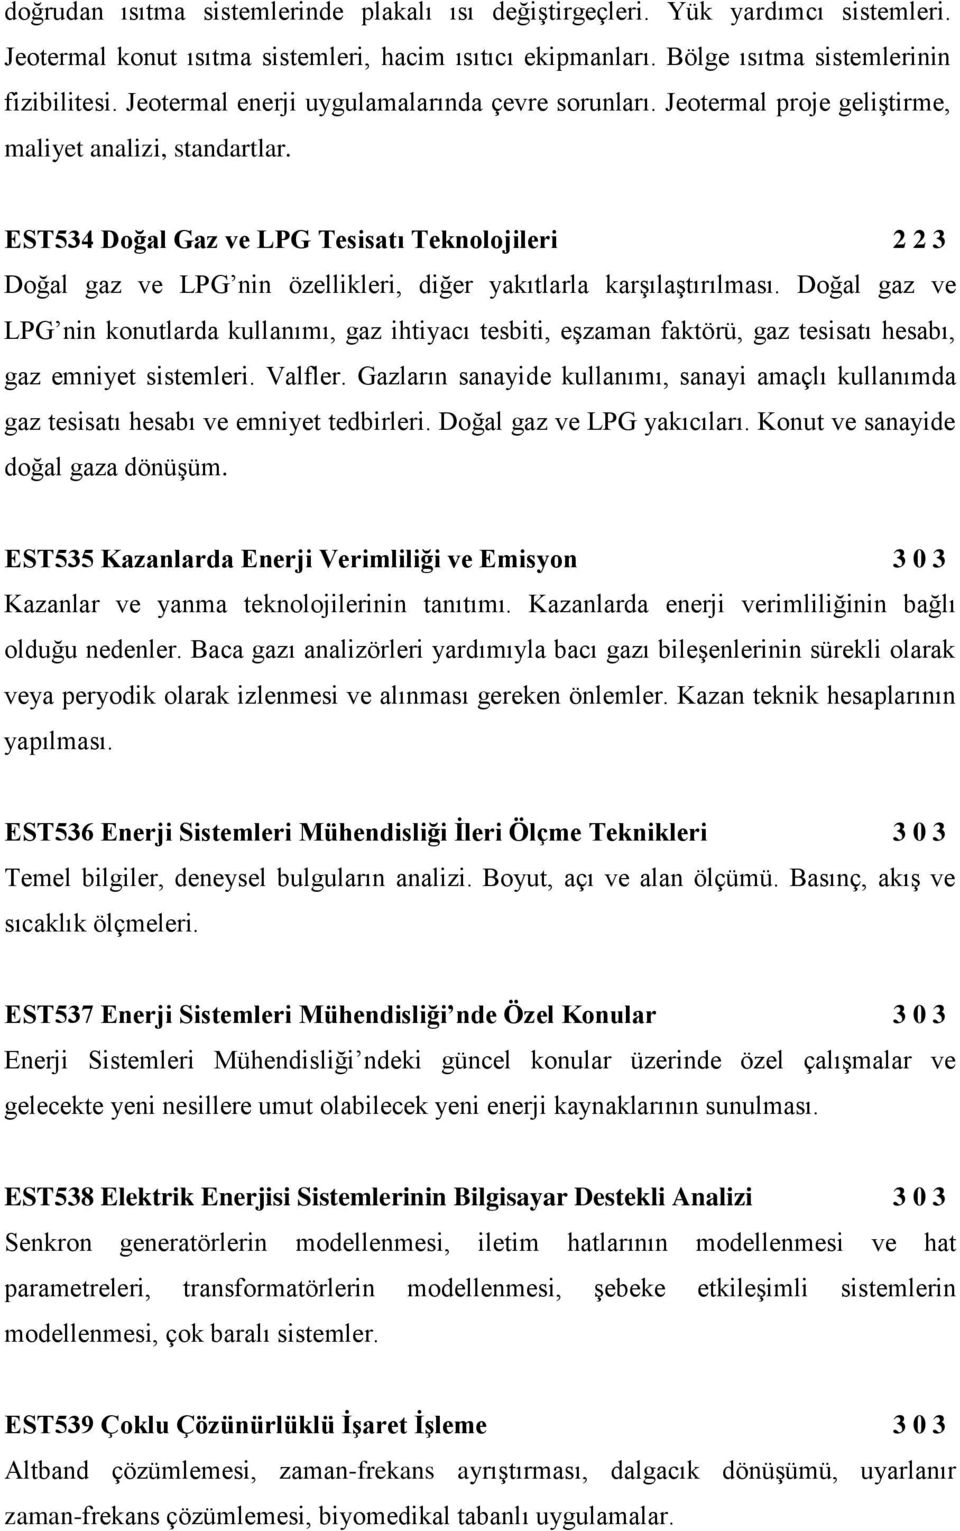 EST534 Doğal Gaz ve LPG Tesisatı Teknolojileri 2 2 3 Doğal gaz ve LPG nin özellikleri, diğer yakıtlarla karşılaştırılması.